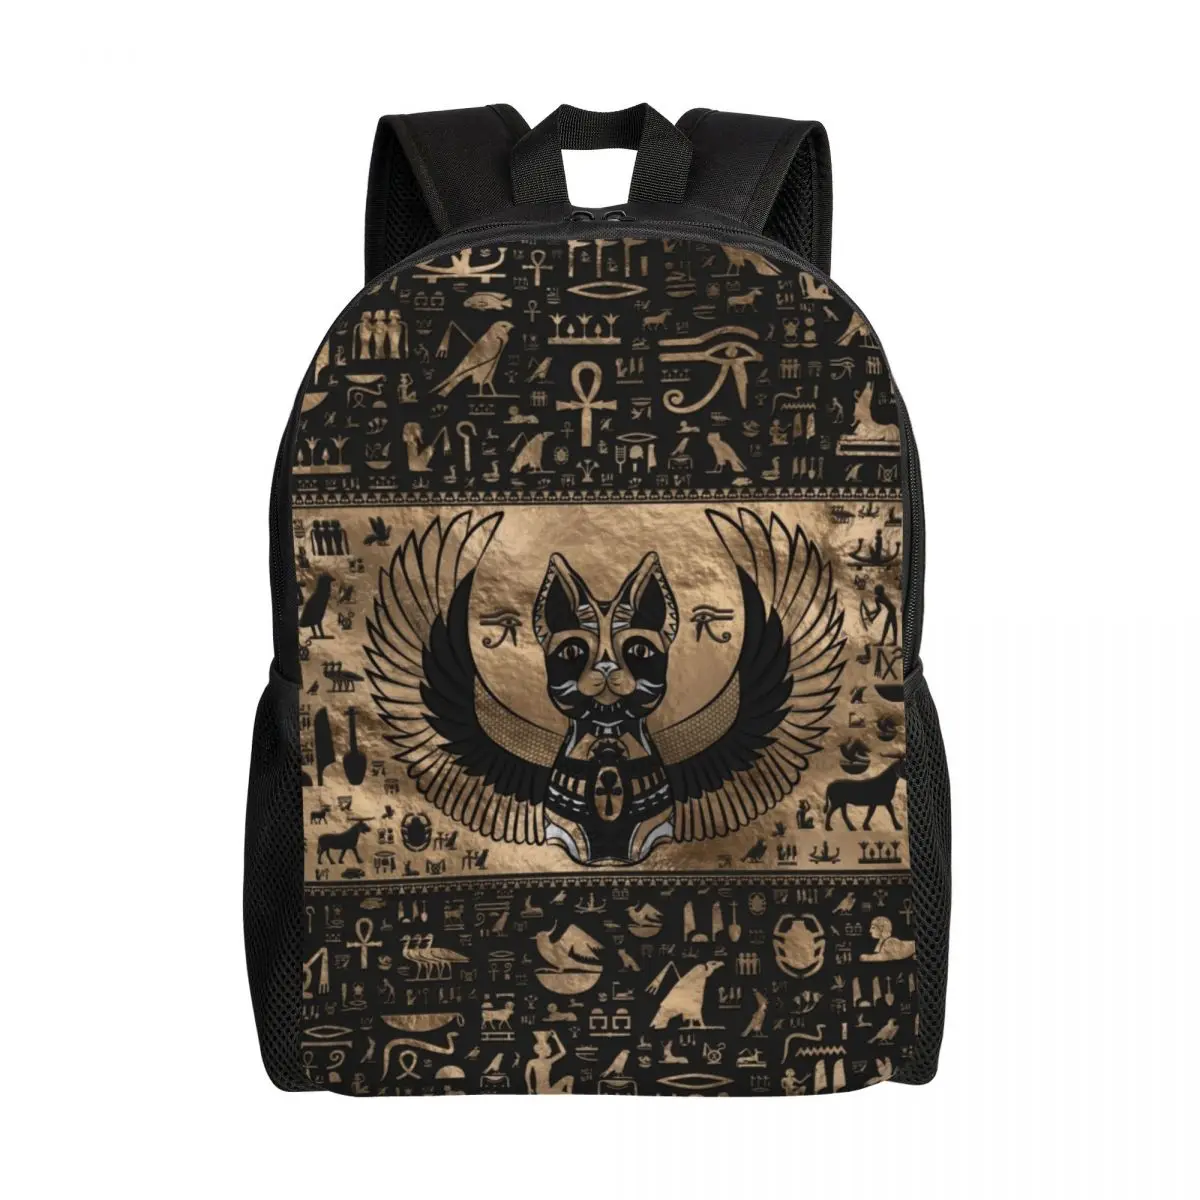 

Egyptian Cat Goddess Bastet Backpacks for Women Men College School Student Bookbag Fits 15 Inch Laptop Ancient Egypt Symbol Bags